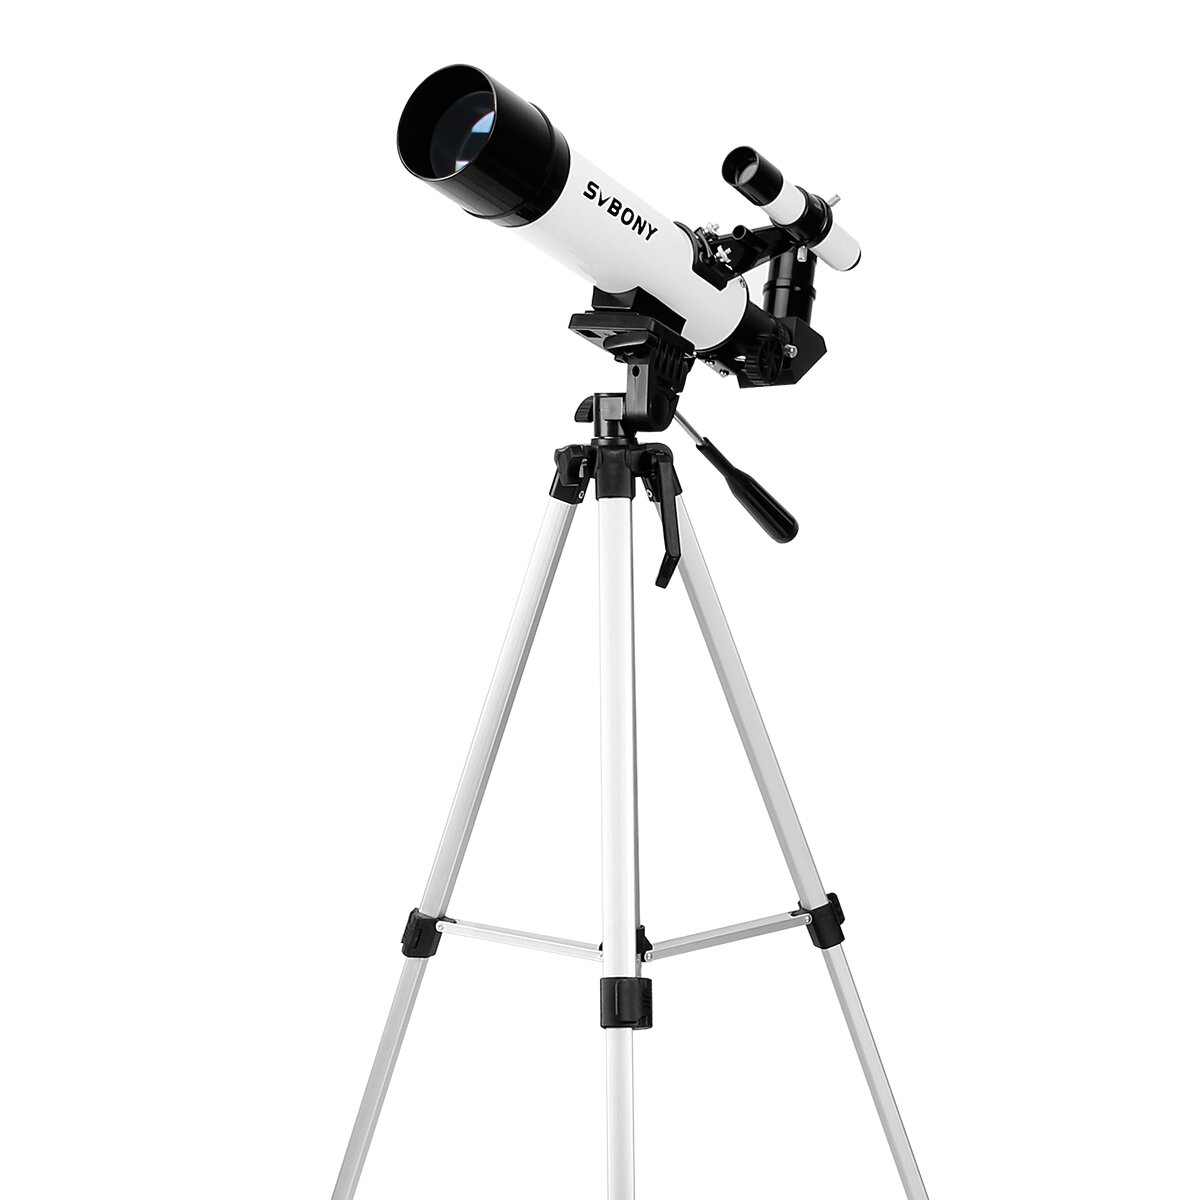 Télescope astronomique SVBONY SV25 avec lentille Barlow 3X, viseur optique pour oiseaux et monoculaire avec trépied